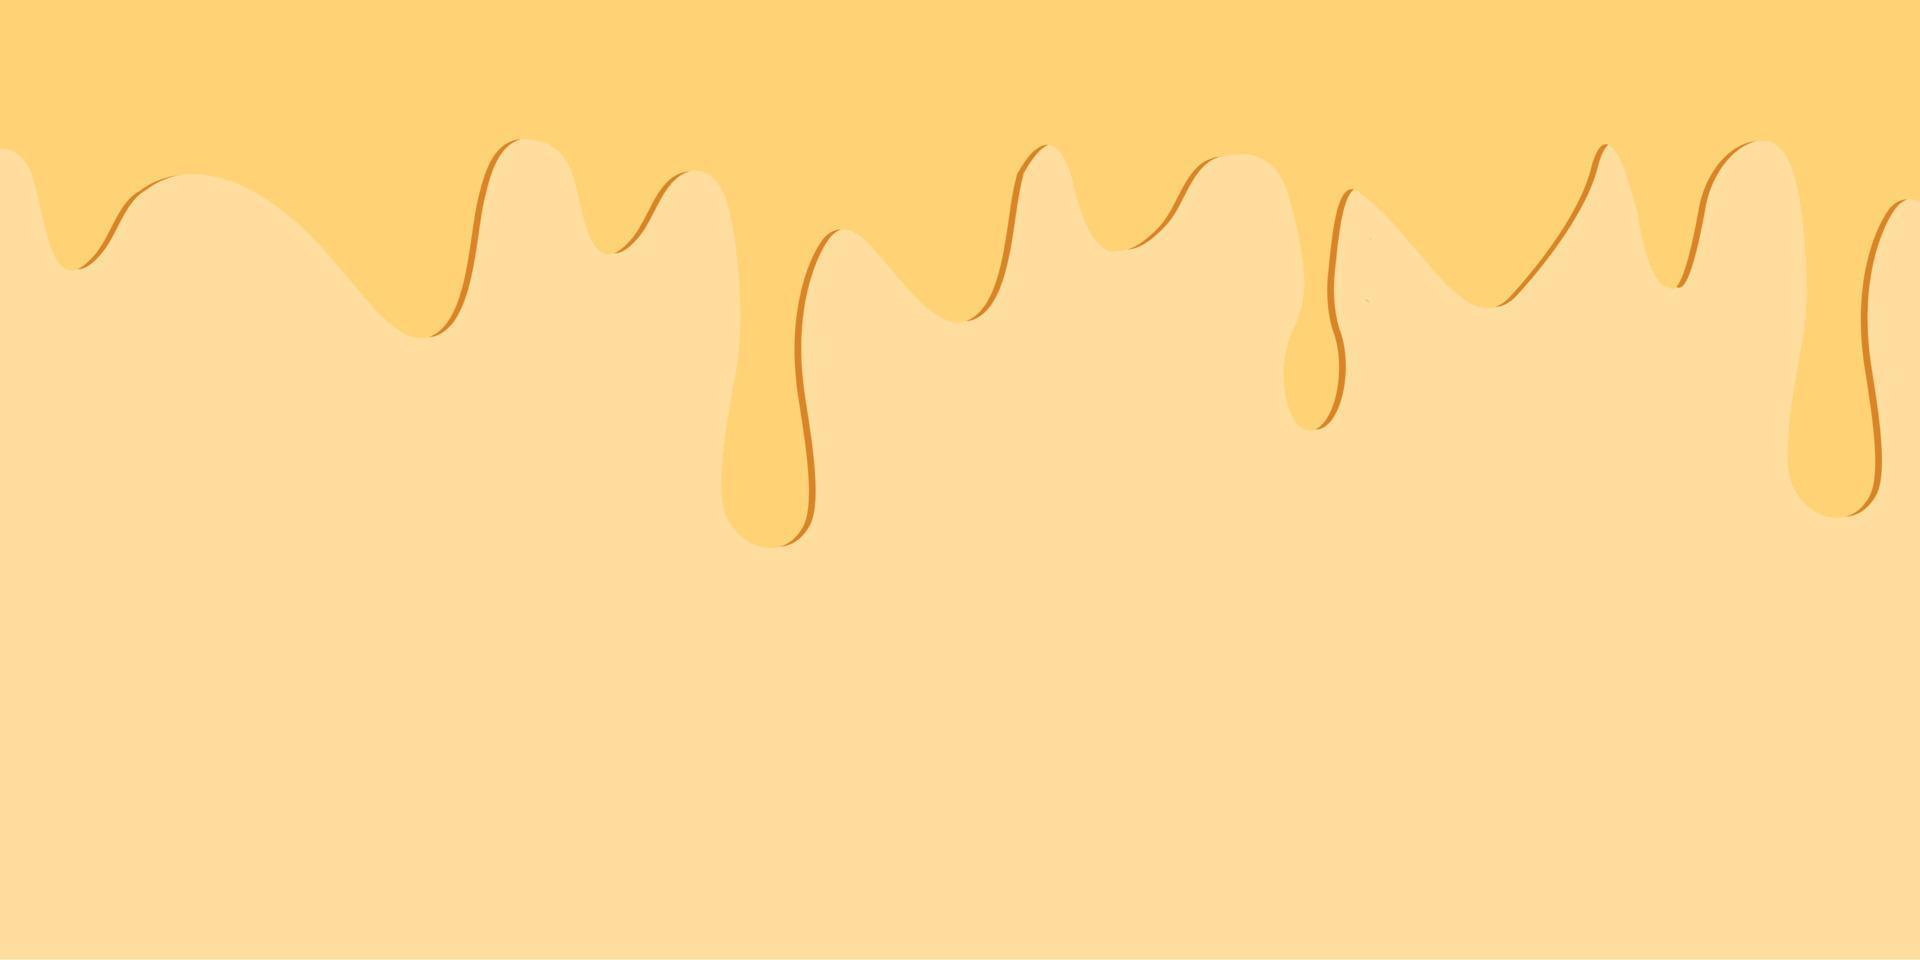 Kuchen Textur horizontal Banner. Keks nahtlos Muster mit cremig Glasur. Panettone Rand mit Verbreitung Süss Creme. Vektor Design Vorlage zum Banner, Poster, Flyer, Postkarte, Abdeckung, Werbung